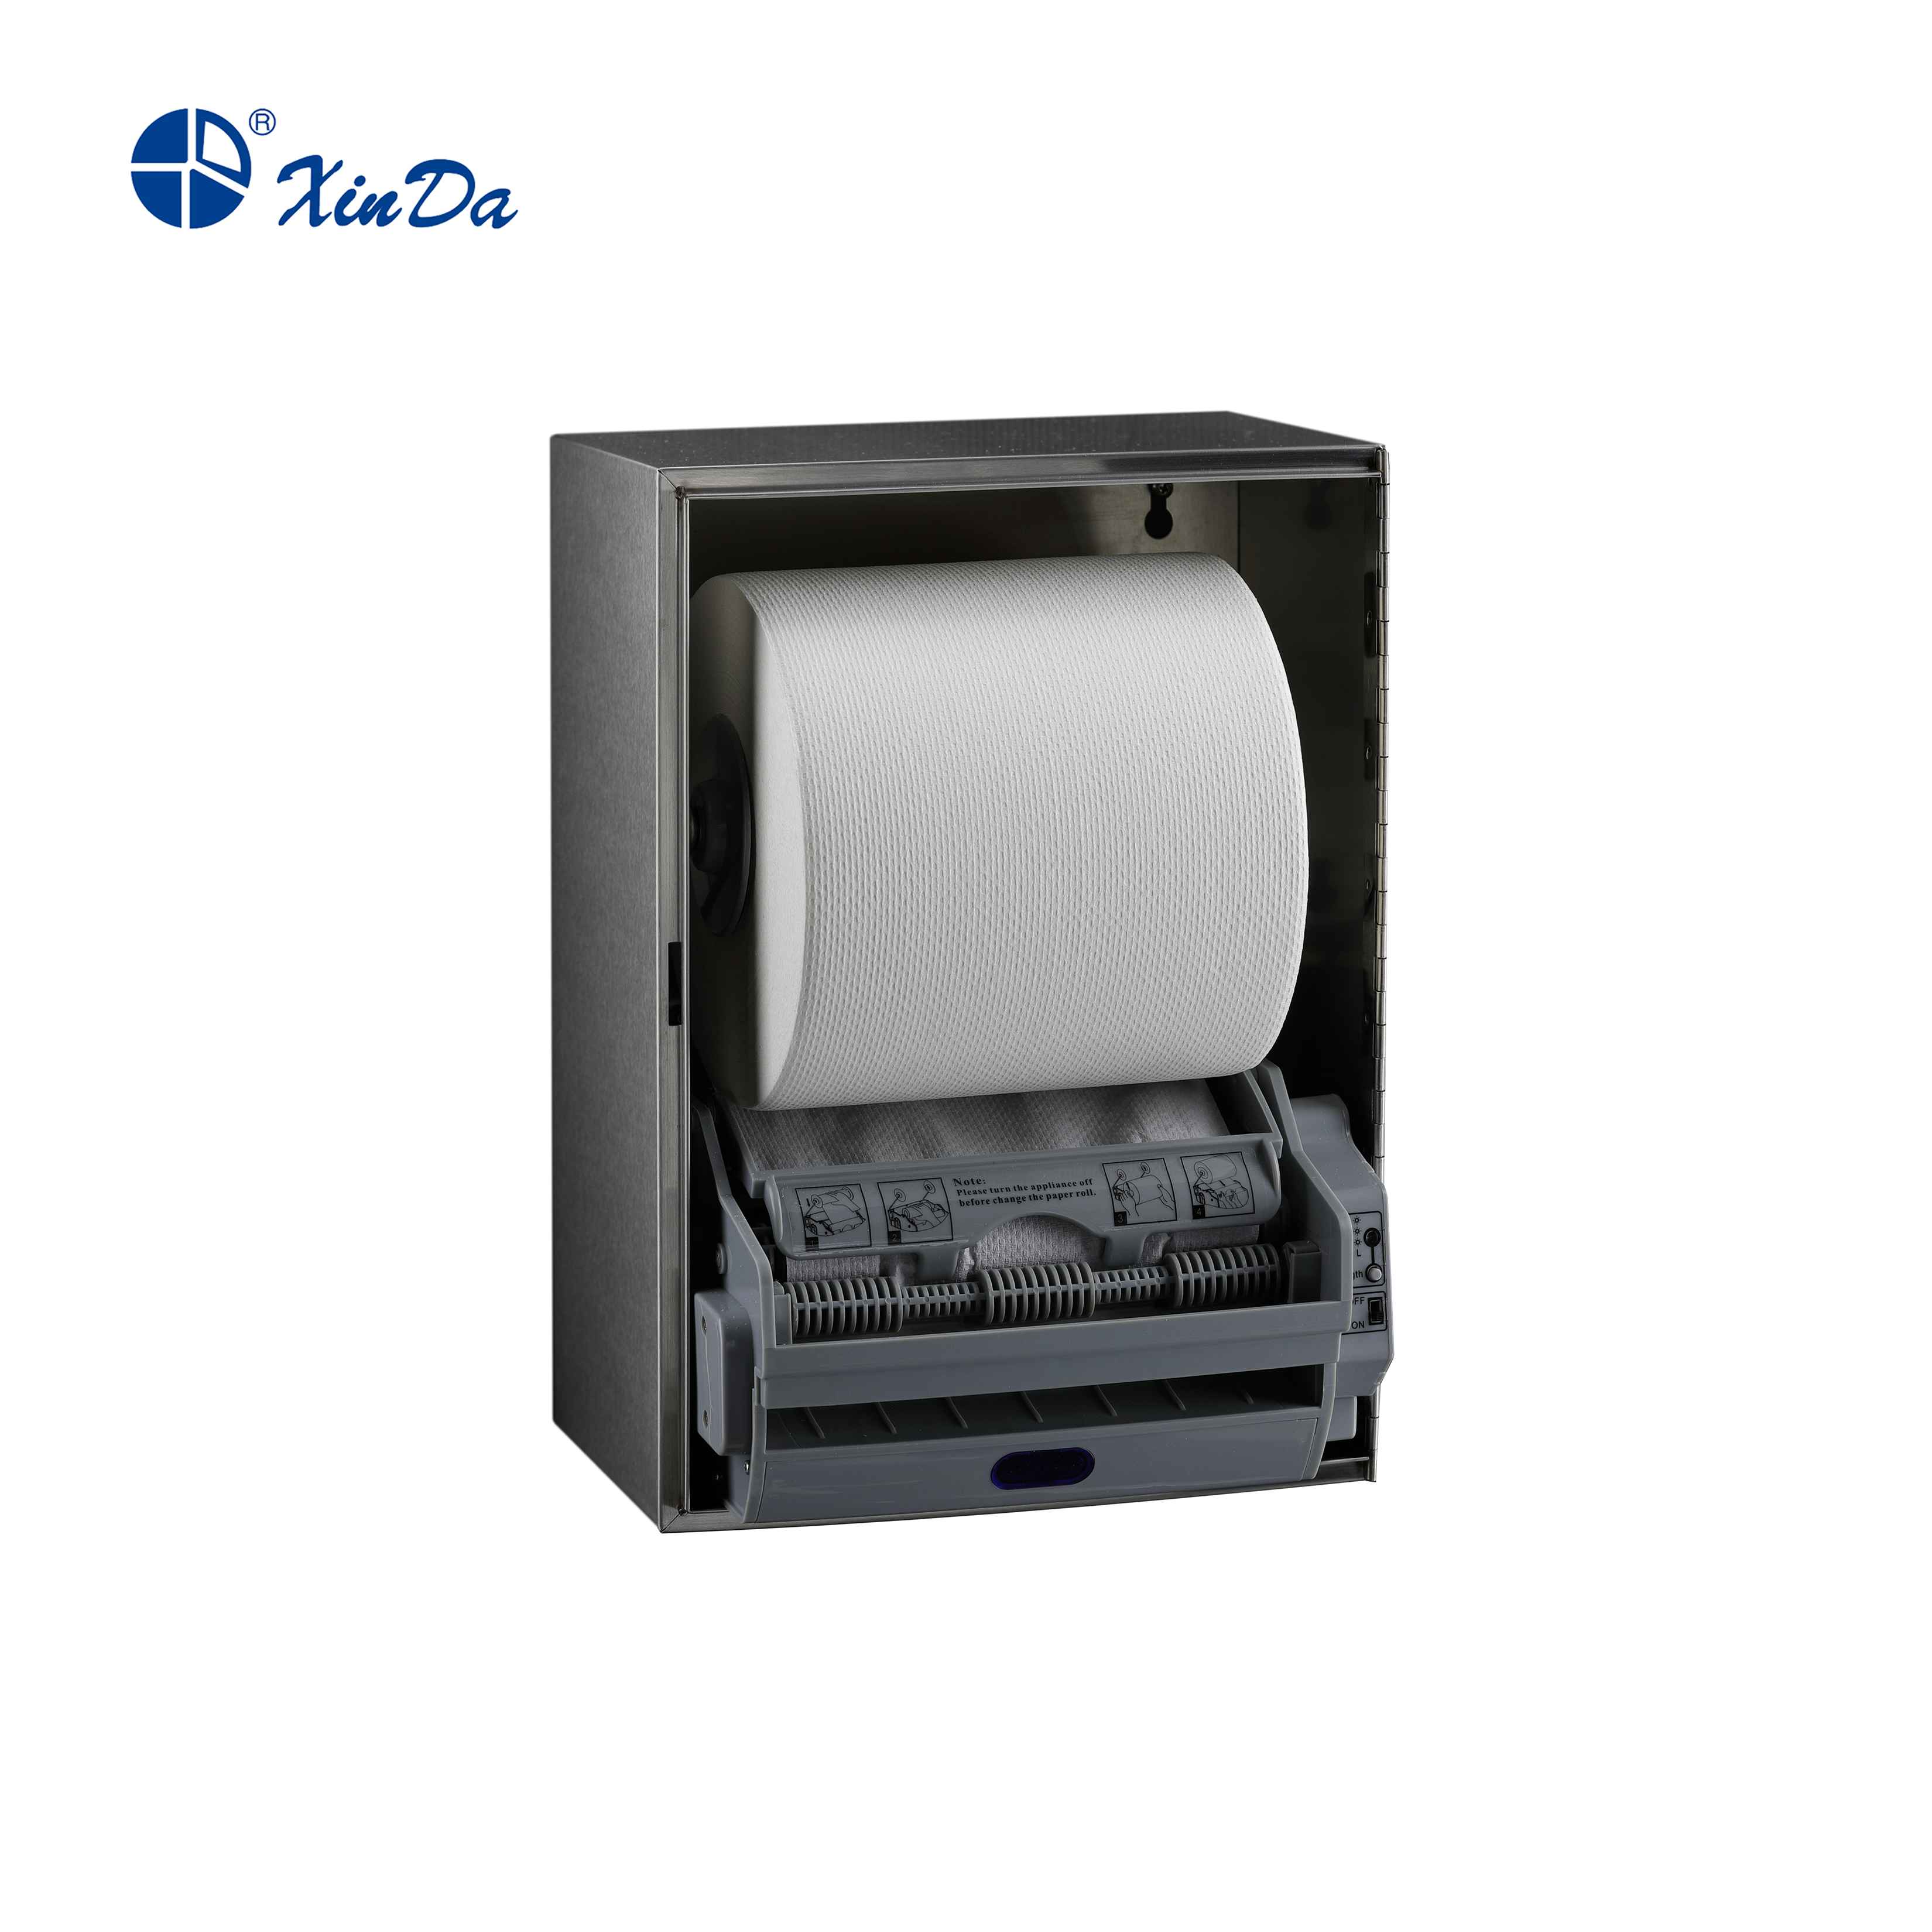 Dispensador de toallas de papel de mano para cocina de inodoro XinDa CZQ20K, precio de fábrica, dispensador de papel Facial Manual